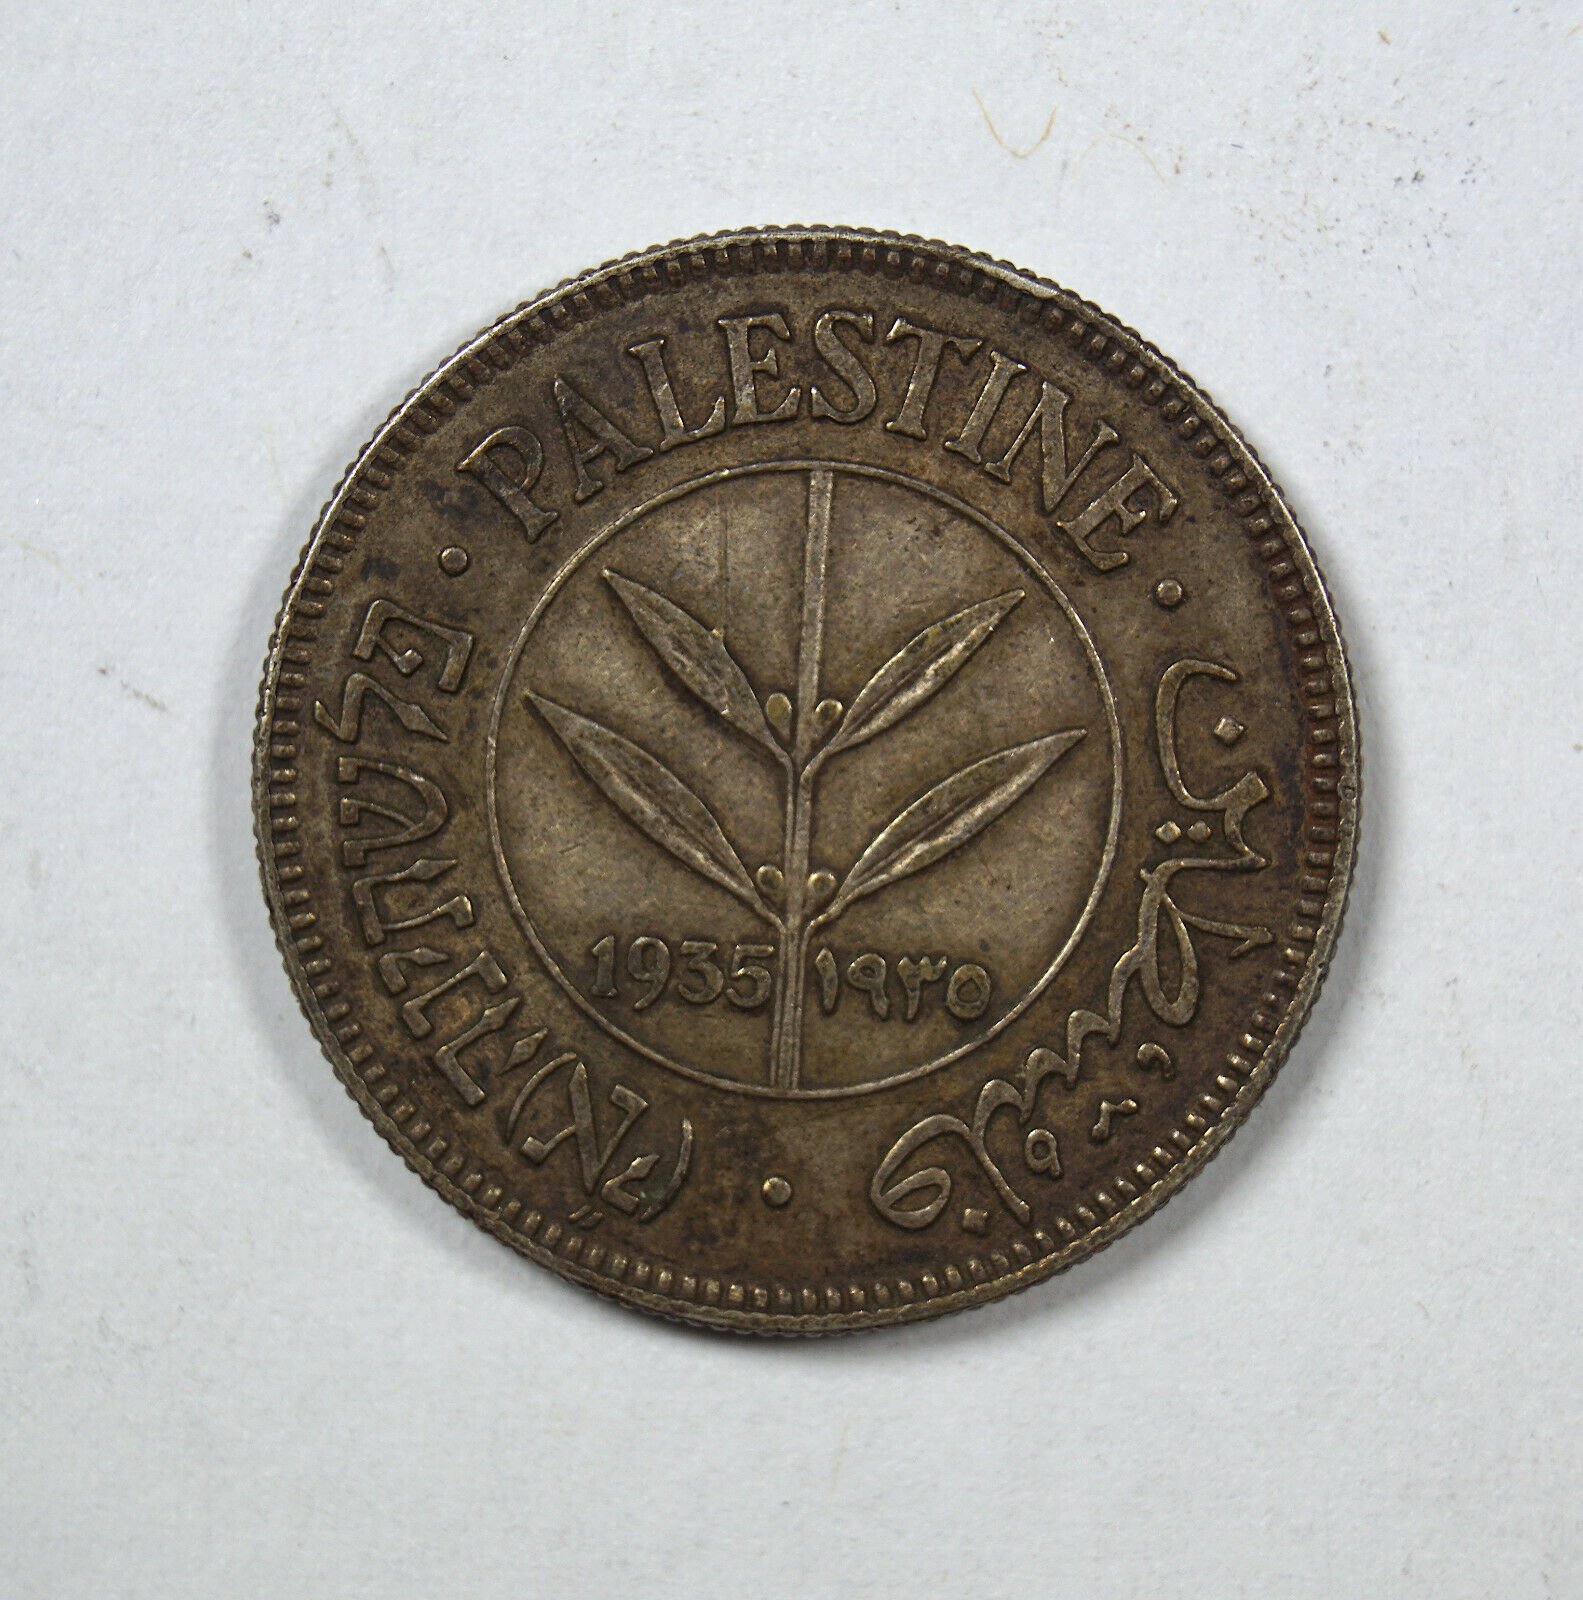 Palestine 1935 50 Mils